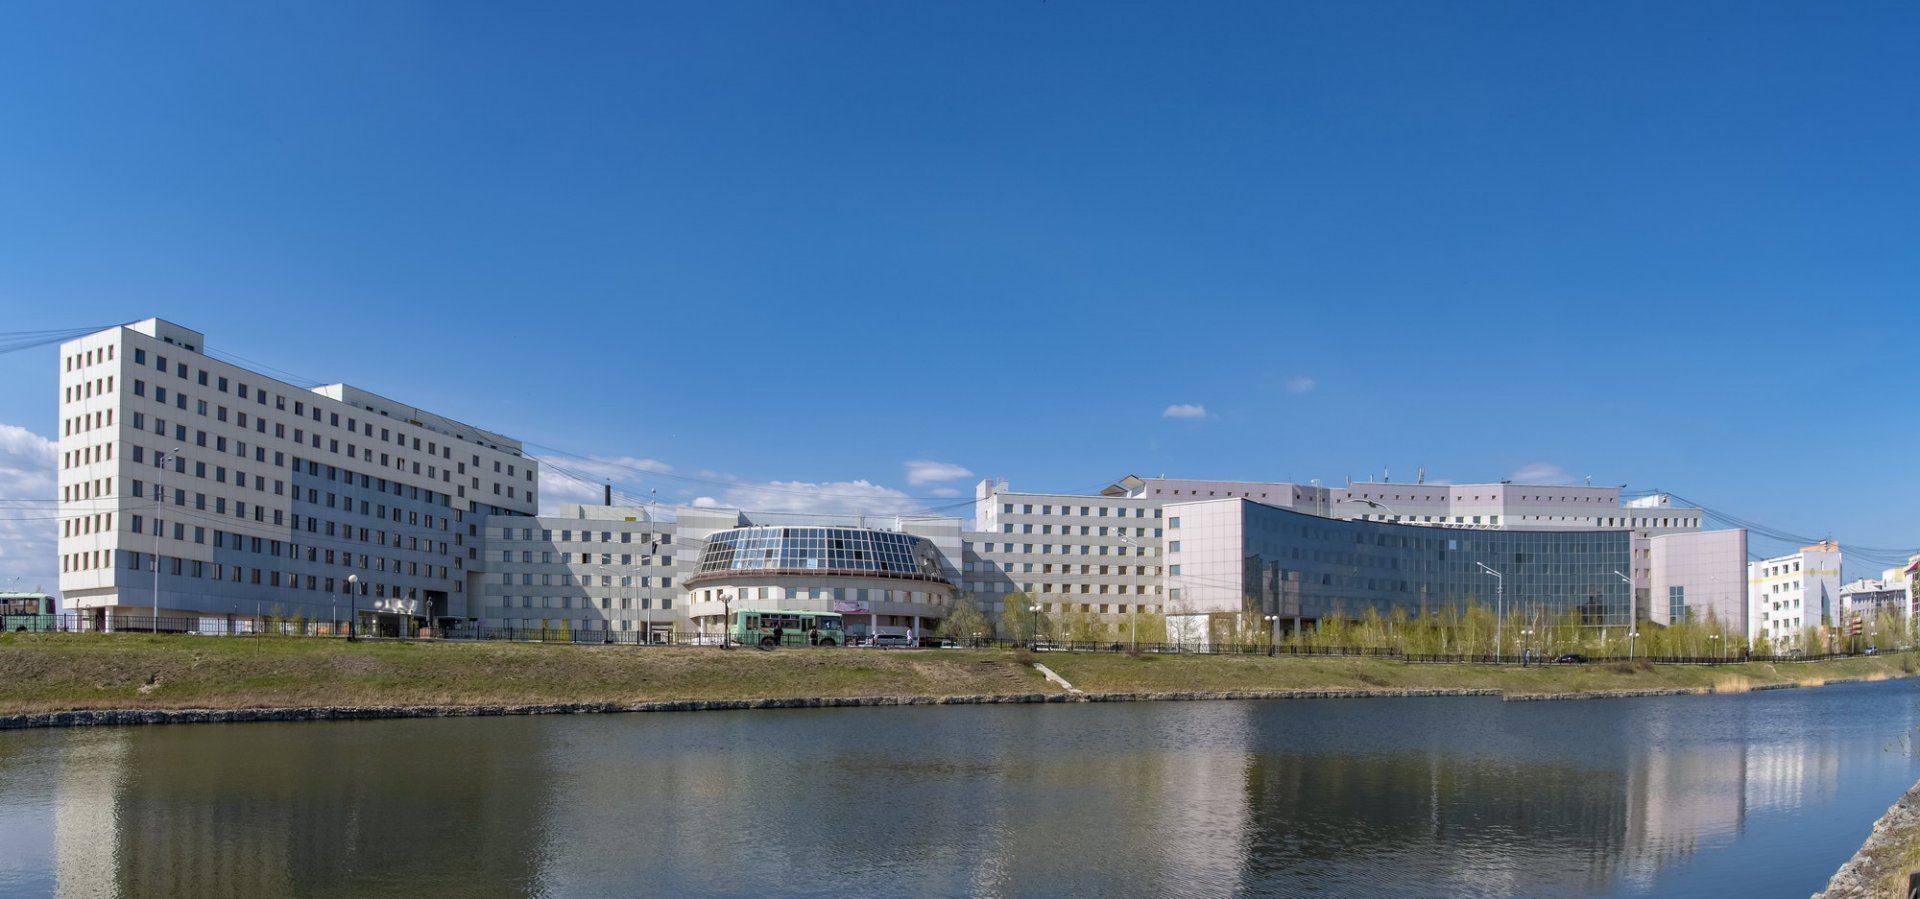 Северо-Восточный федеральный университет имени М.К. Аммосова (СВФУ)